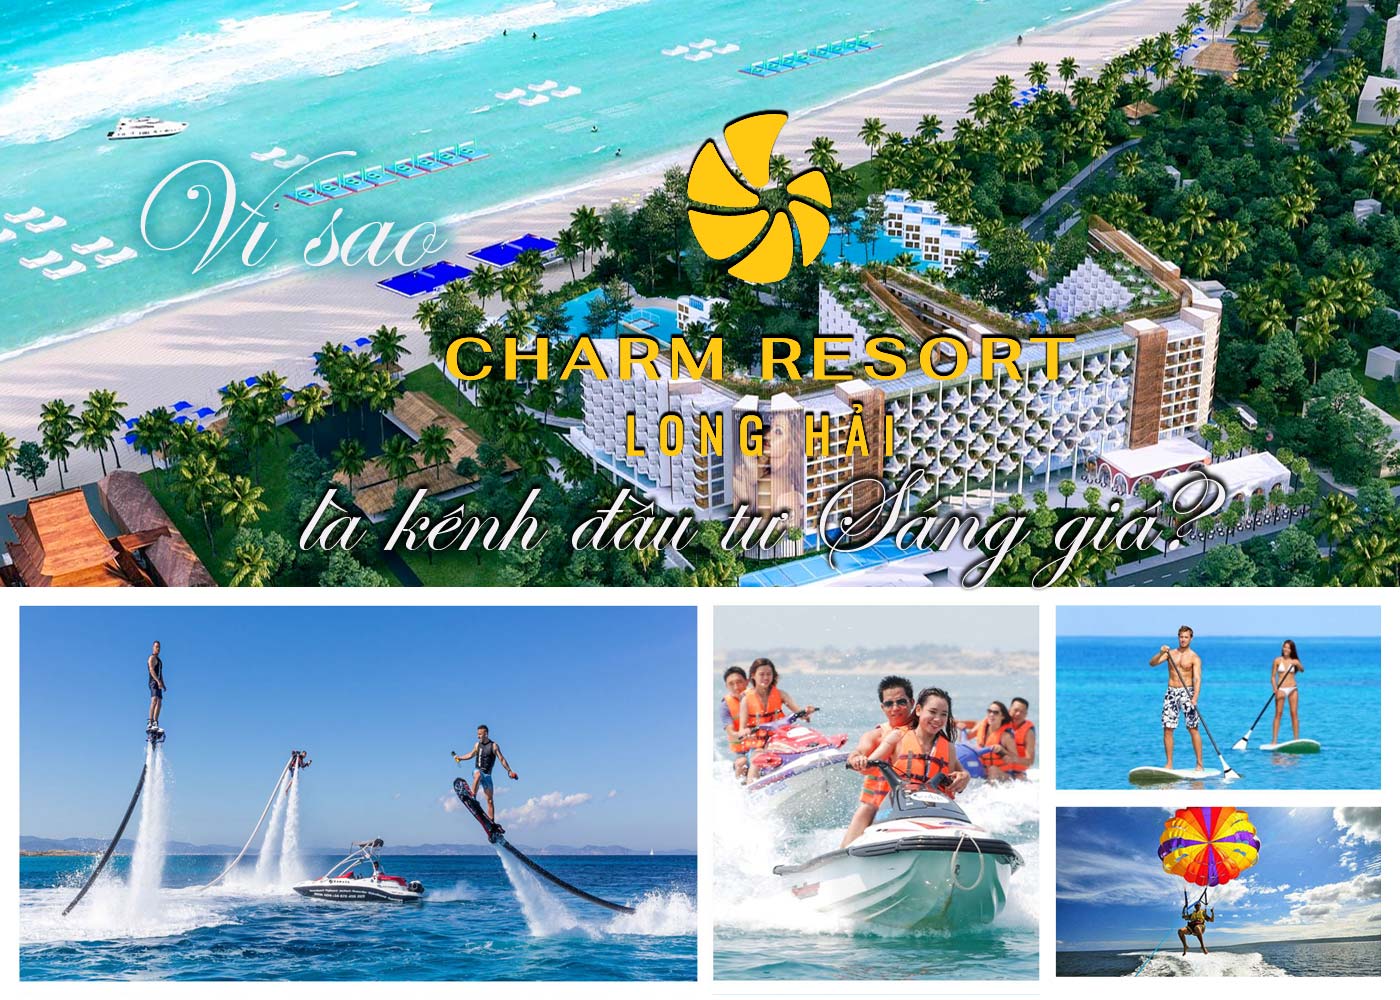 Vì sao Charm Resort Long Hải là kênh đầu tư sáng giá - Ảnh 1